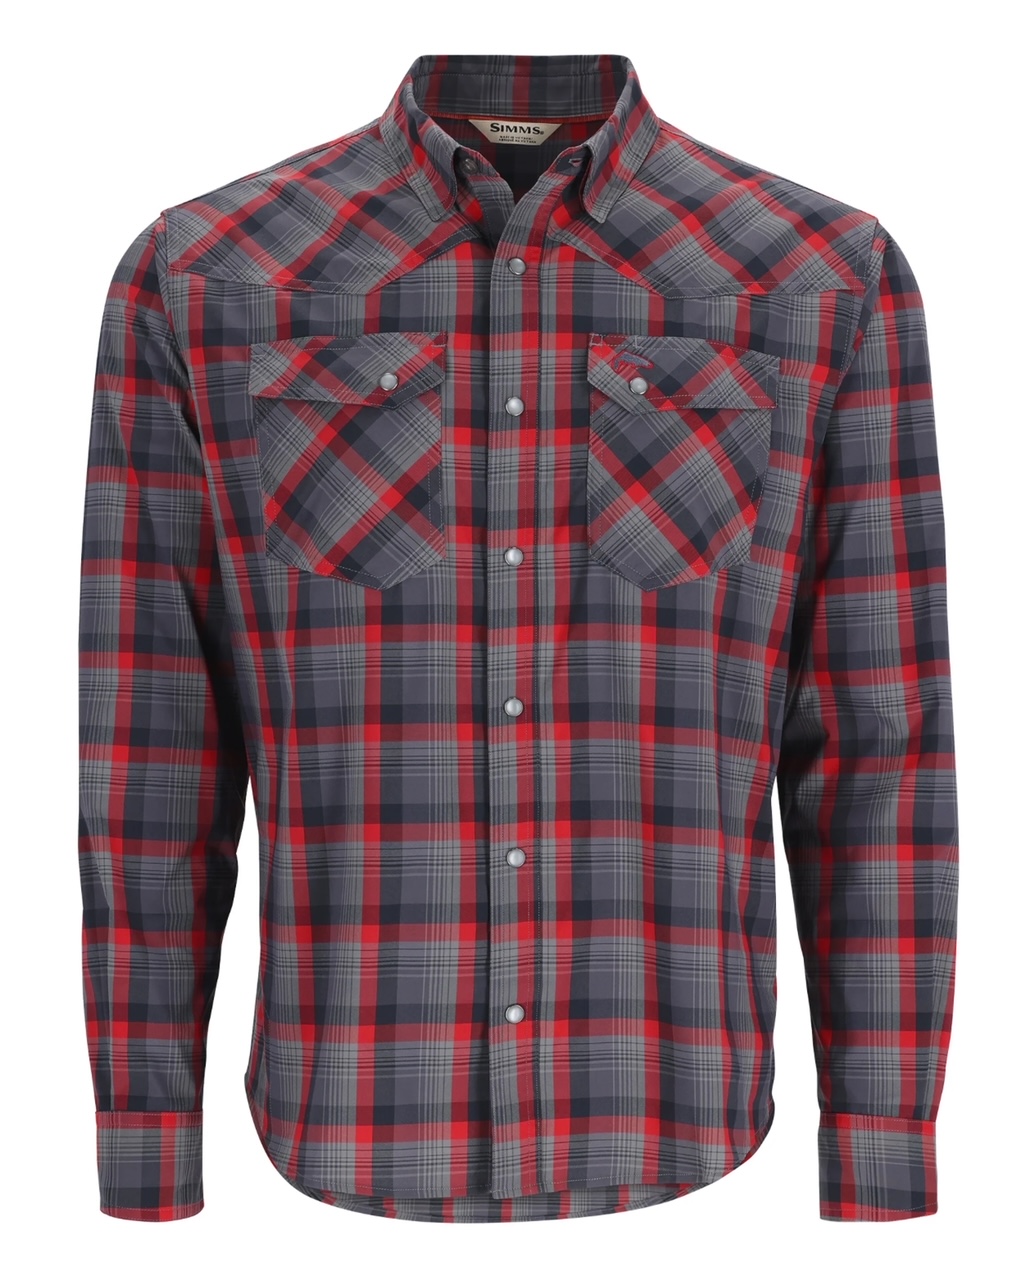 Simms M's Brackett LS Shirt - Auburn Red/Black Window Plaid - Large